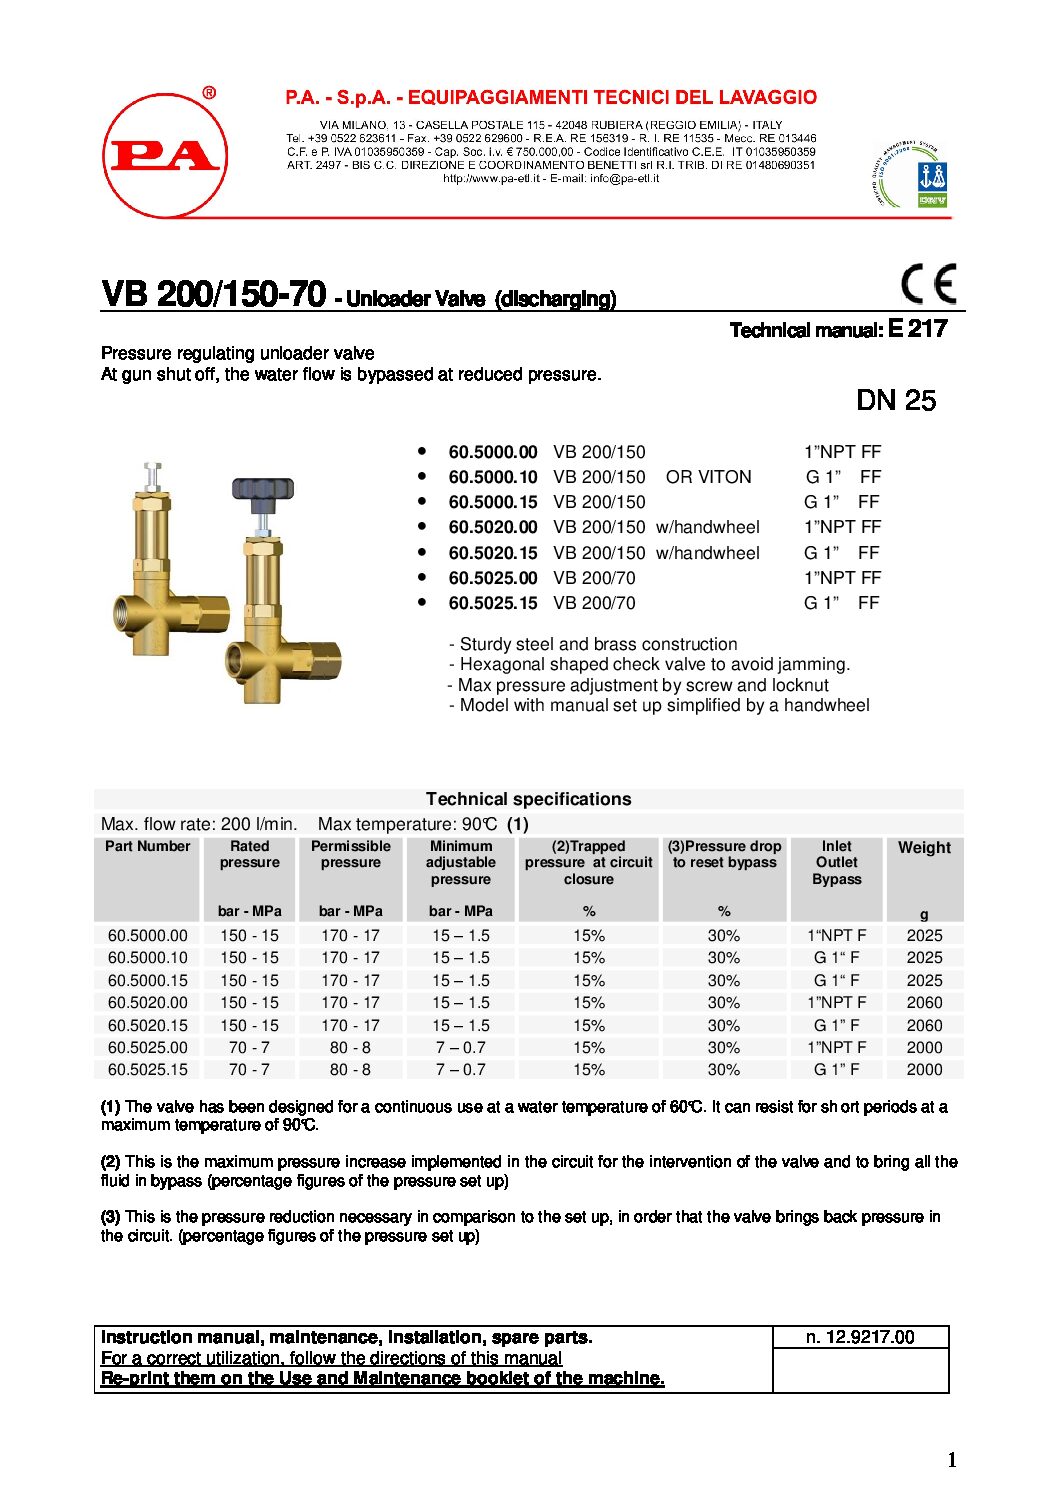 PA VB200/150 Unloader technical manual